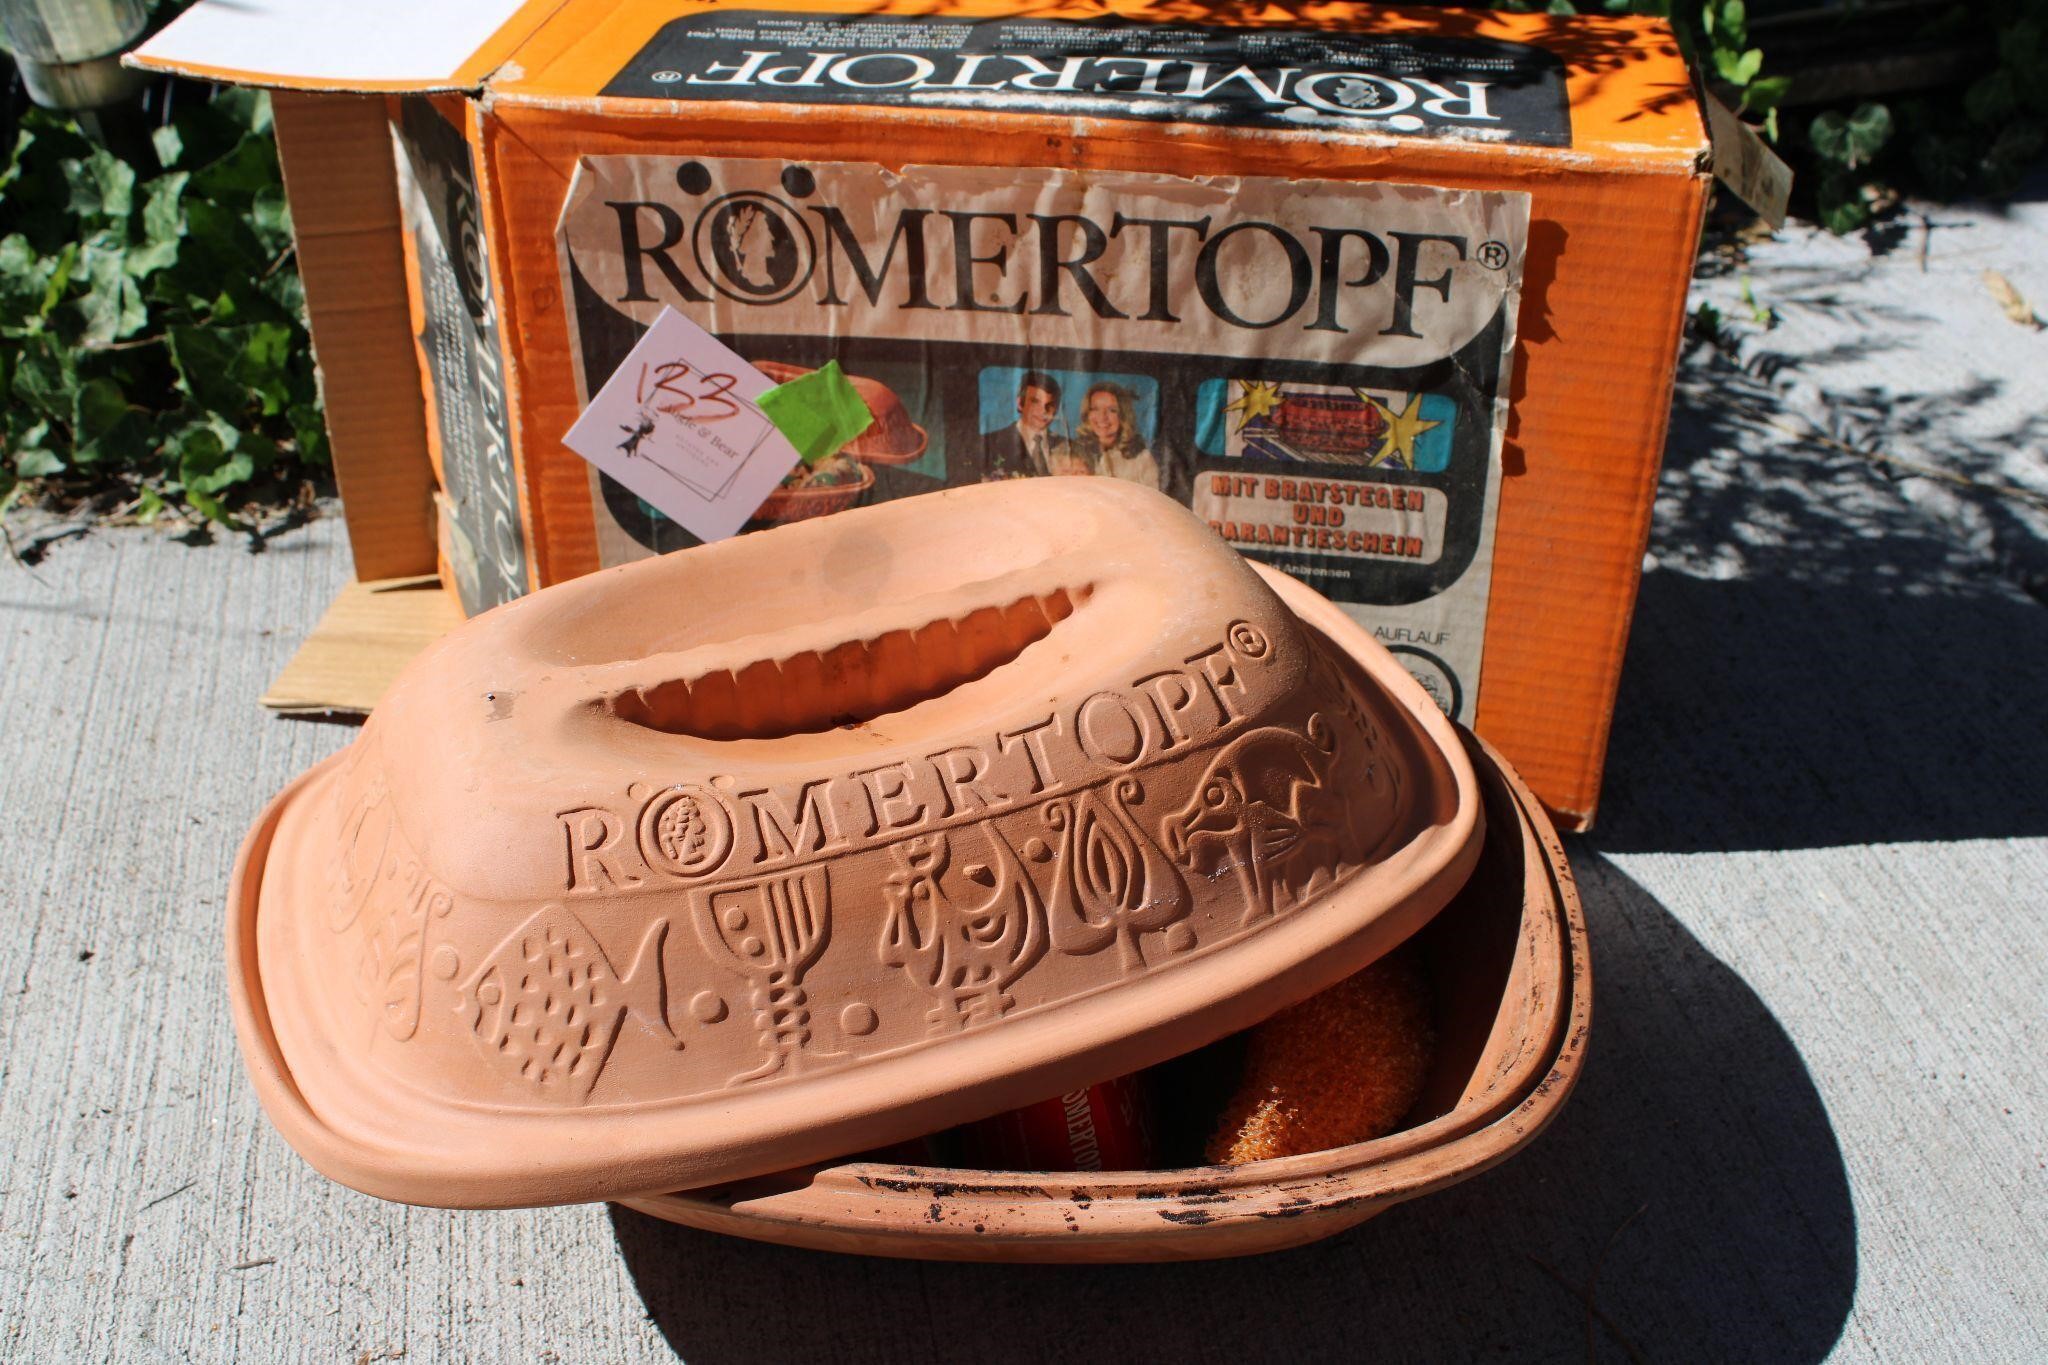 Romertopf roasting pot